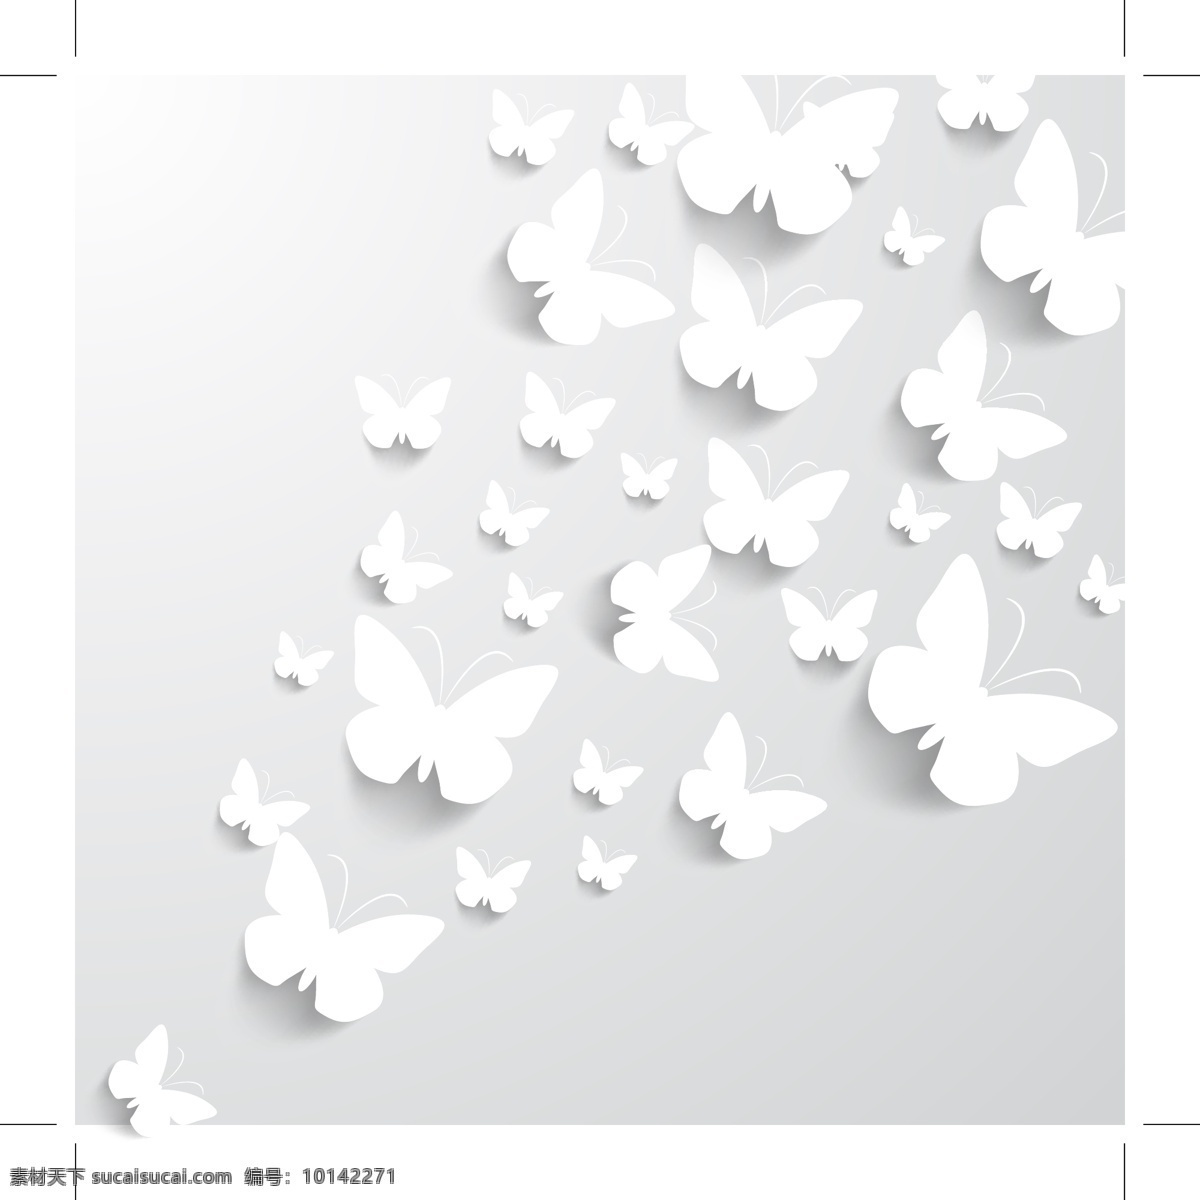 白色 剪纸 蝴蝶 矢量 飞舞 标本 昆虫 动物 卡通 插画 背景 海报 画册 矢量动物 生物世界